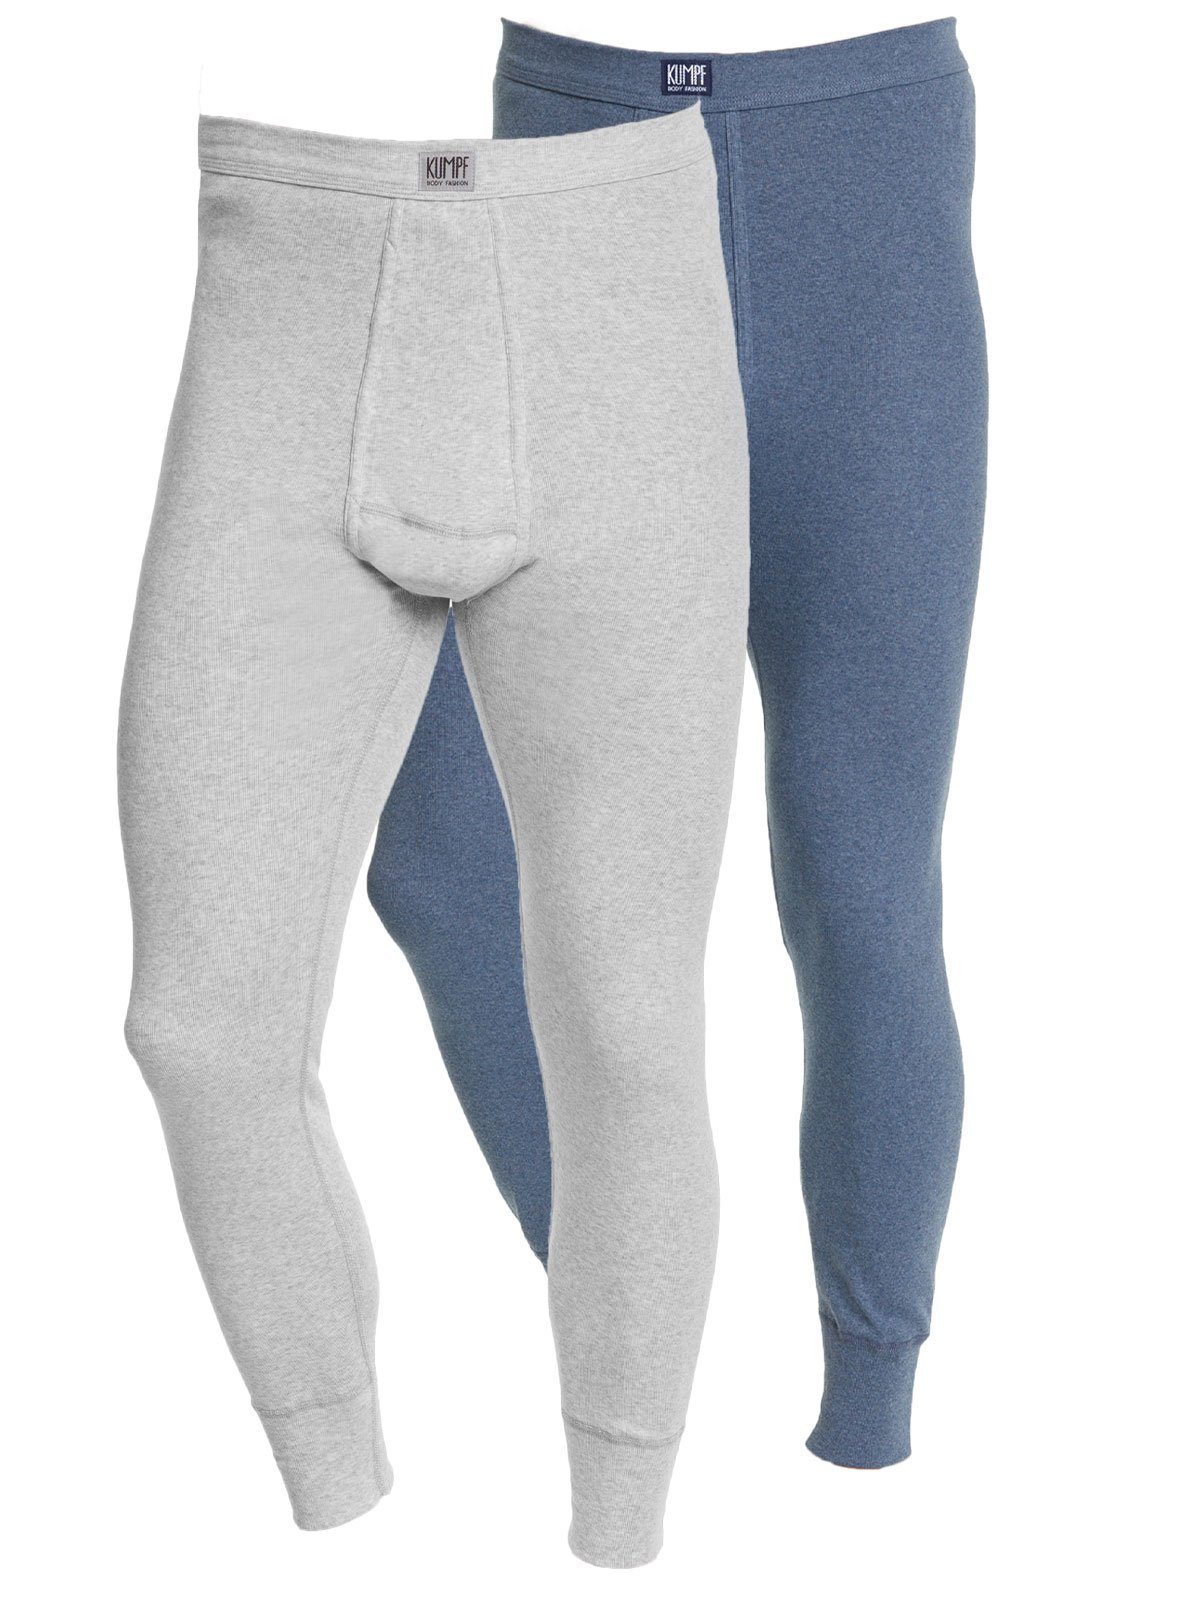 KUMPF Lange Unterhose 2er Sparpack Herren Unterhose Workerwear (Spar-Set, 2-St) mit eingriff blau-melange kiesel-melange | Lange Unterhosen